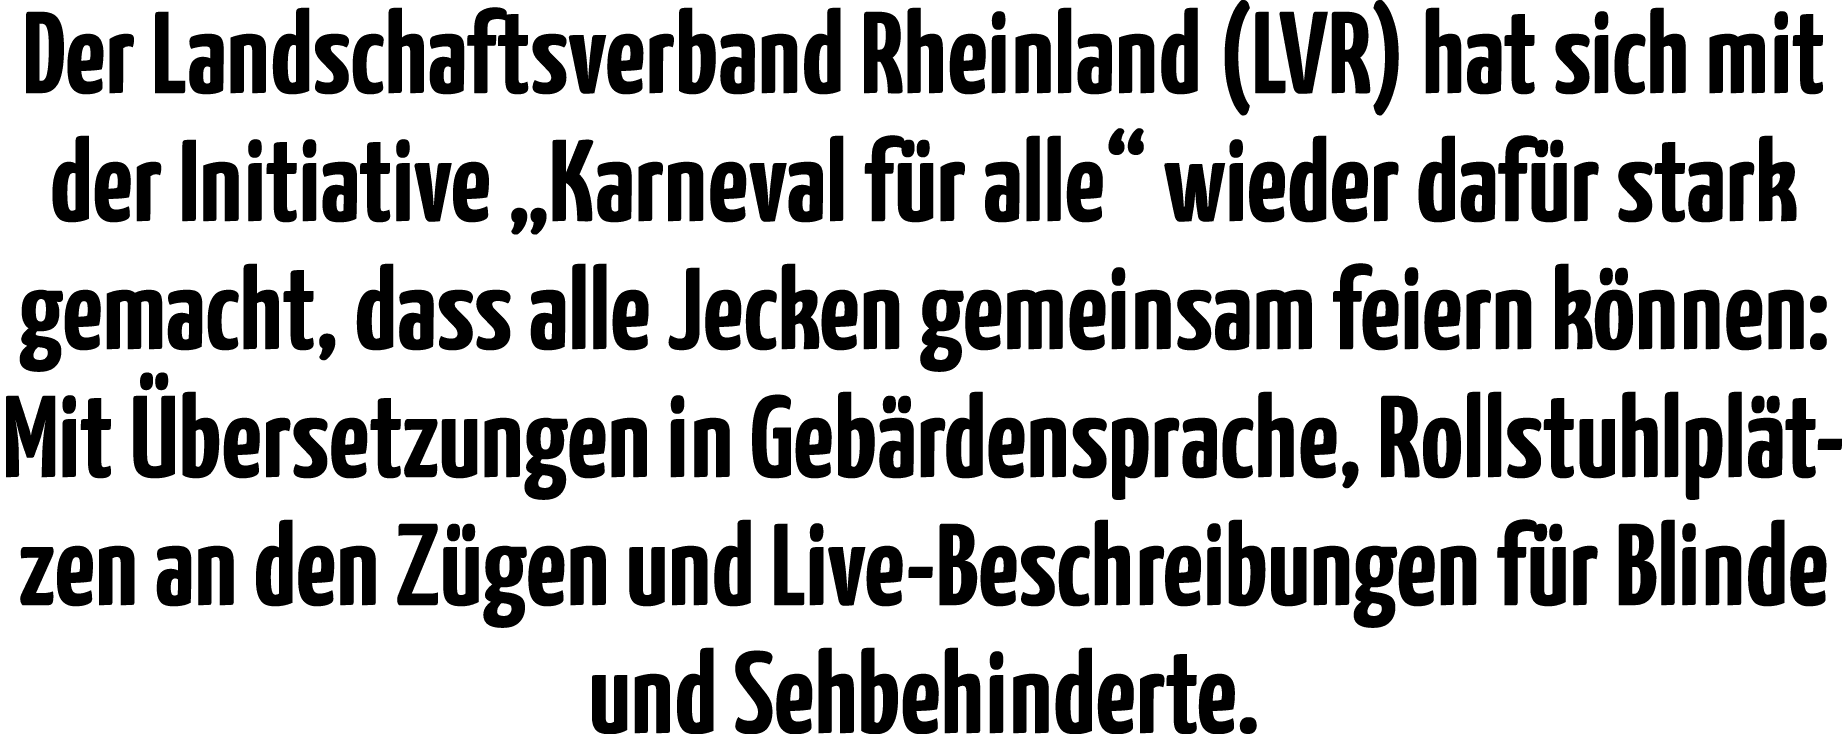 Der Landschaftsverband Rheinland (LVR) hat sich mit der Initiative  Karneval für alle  wieder dafür stark gemacht, da   